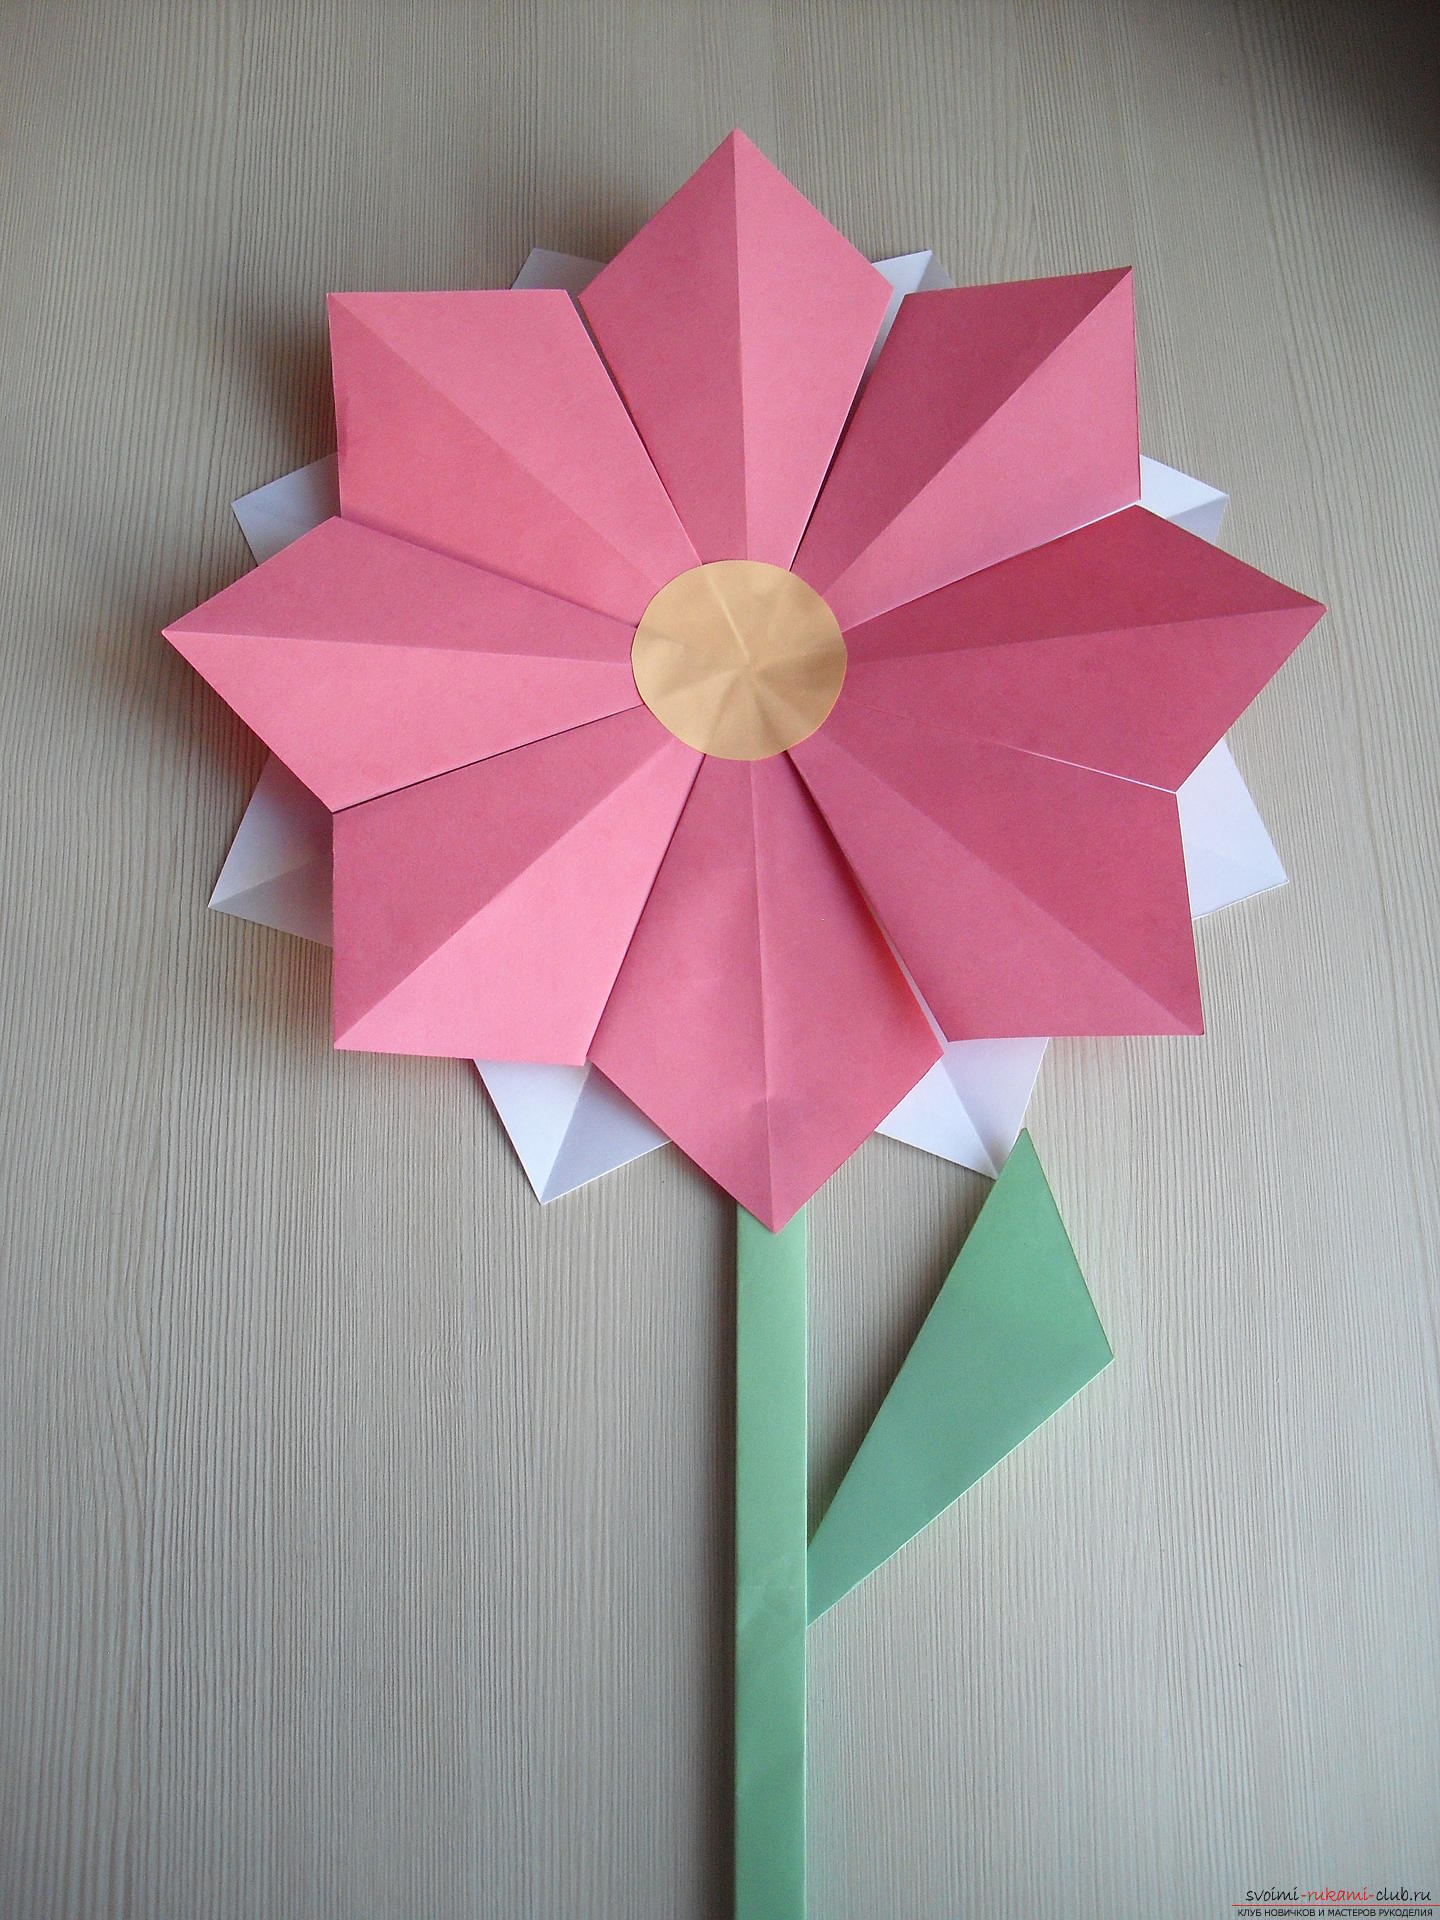 Этот мастер-класс научит как сделать цветок-оригами из бумаги.. Фото №1